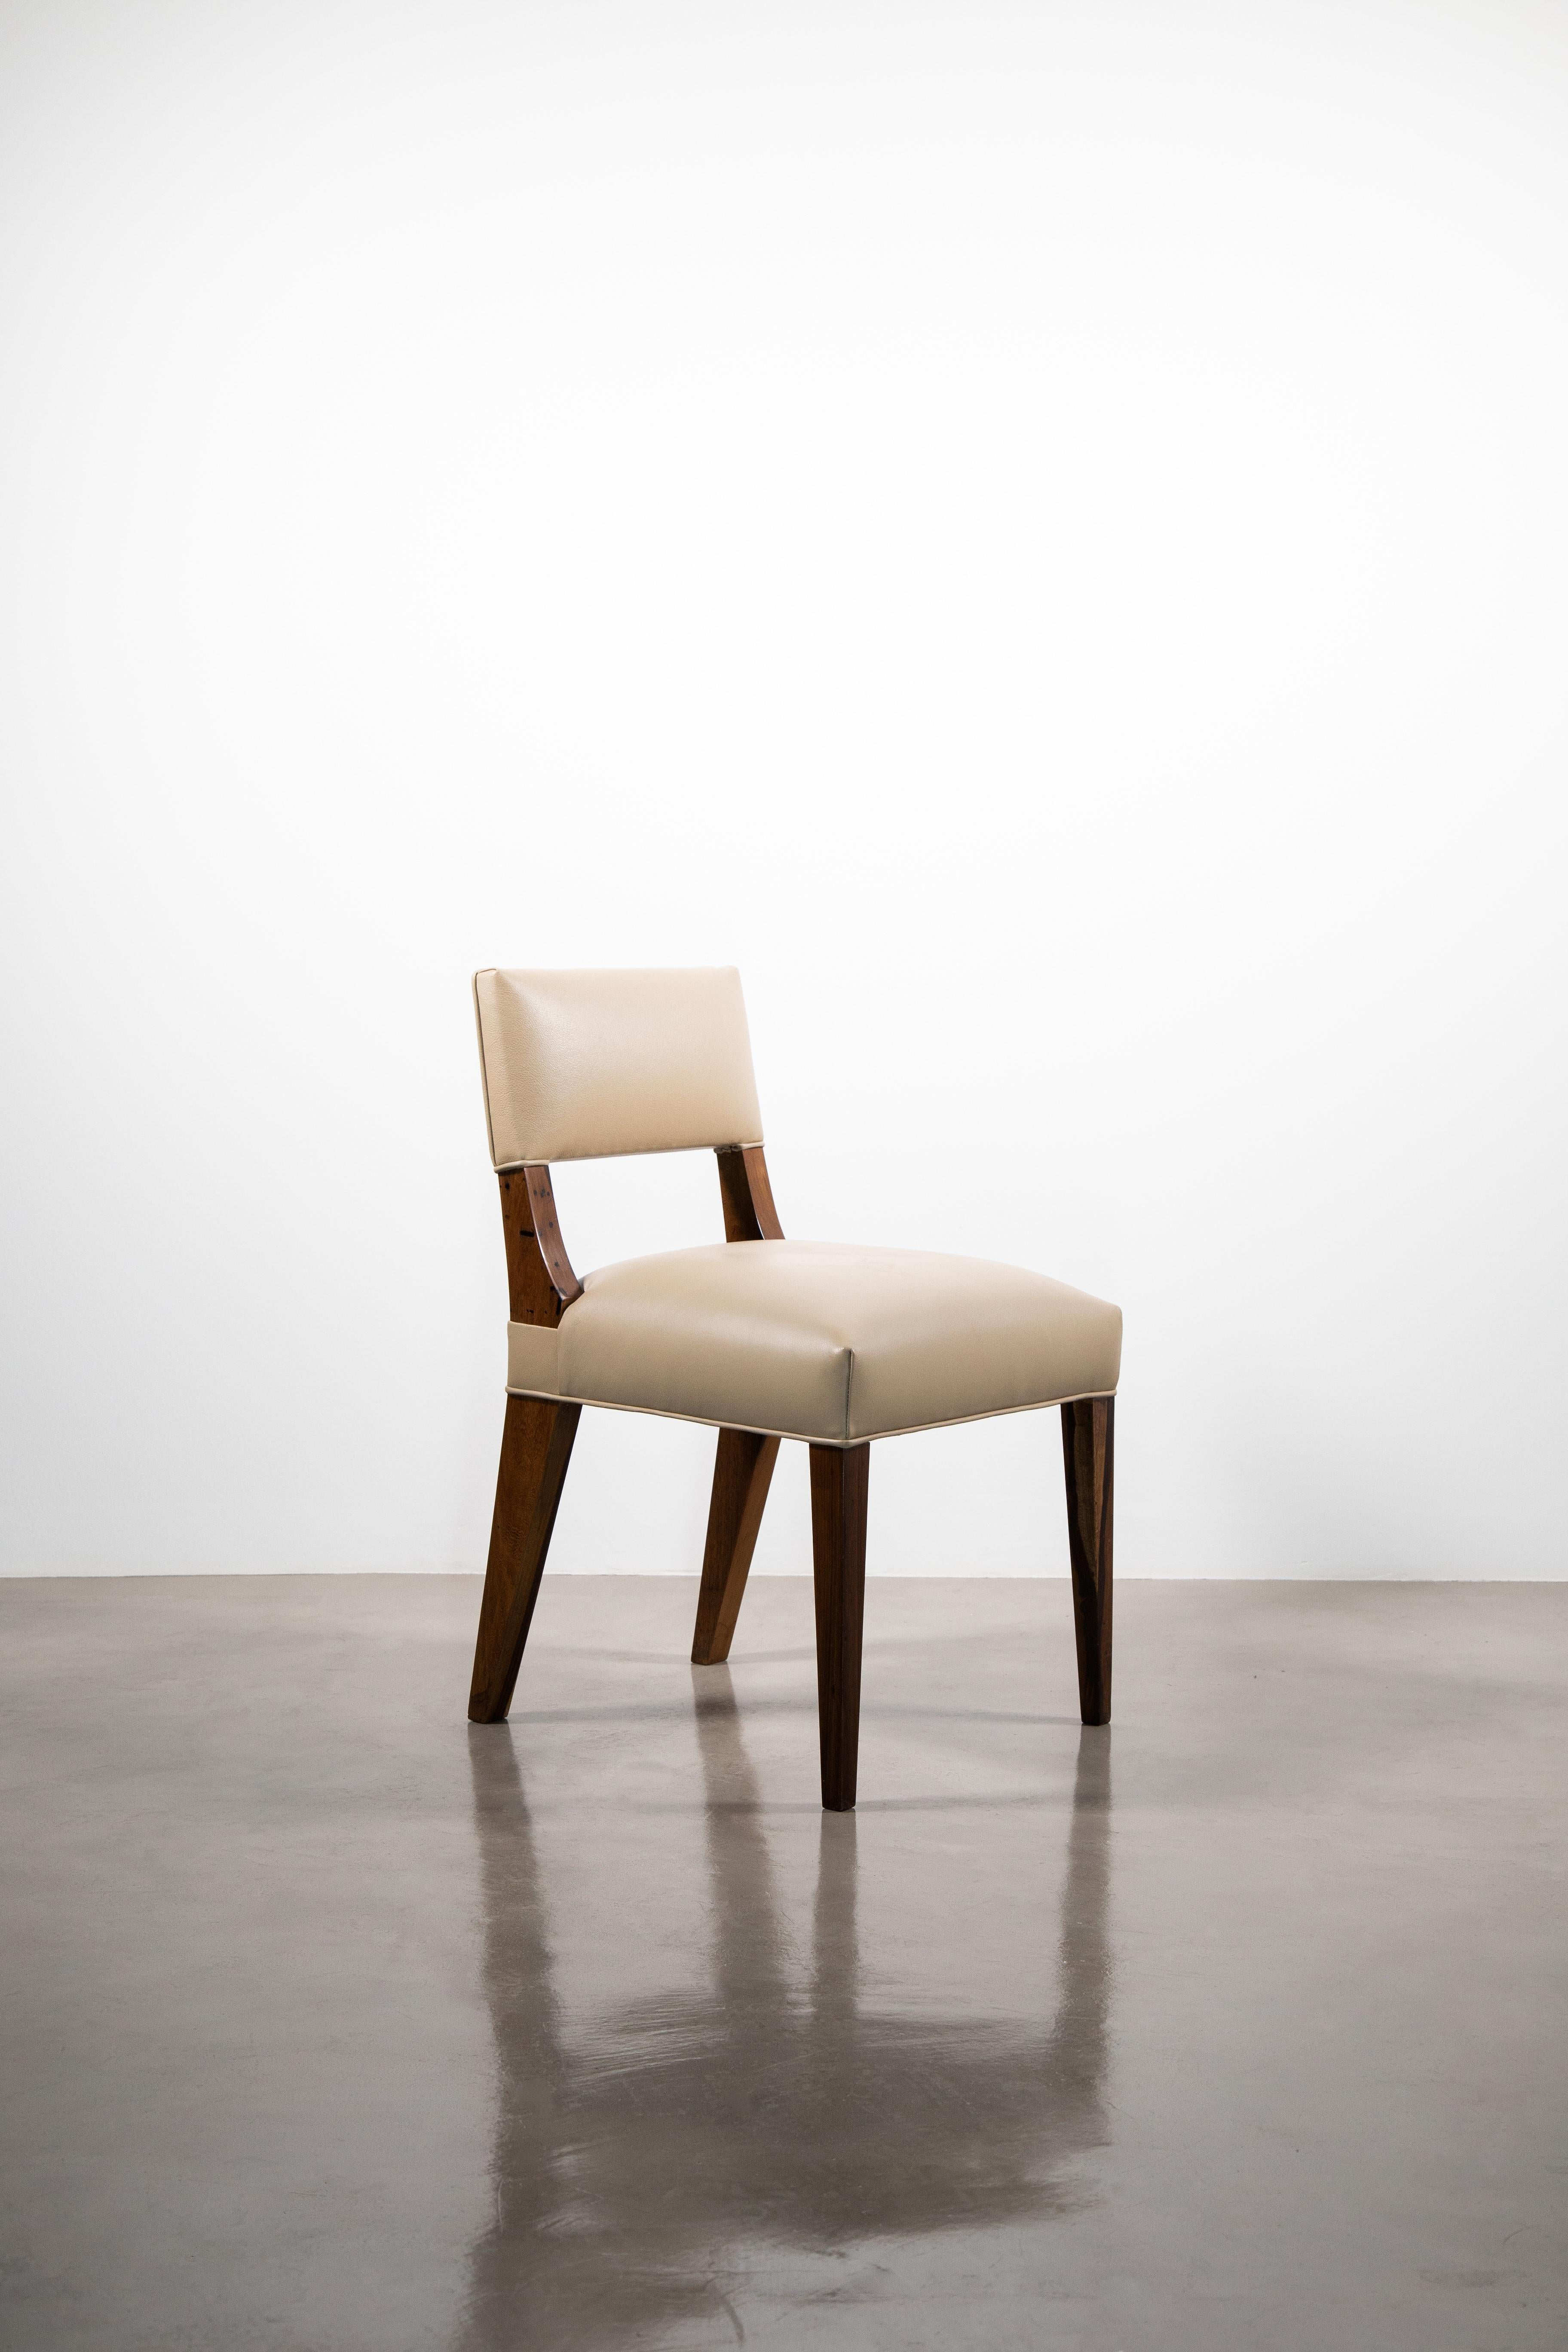 Bruno Moderner Esszimmerstuhl aus argentinischem Palisanderholz und Leder von Costantini Design - Schnell lieferbar

Die Maße sind 21